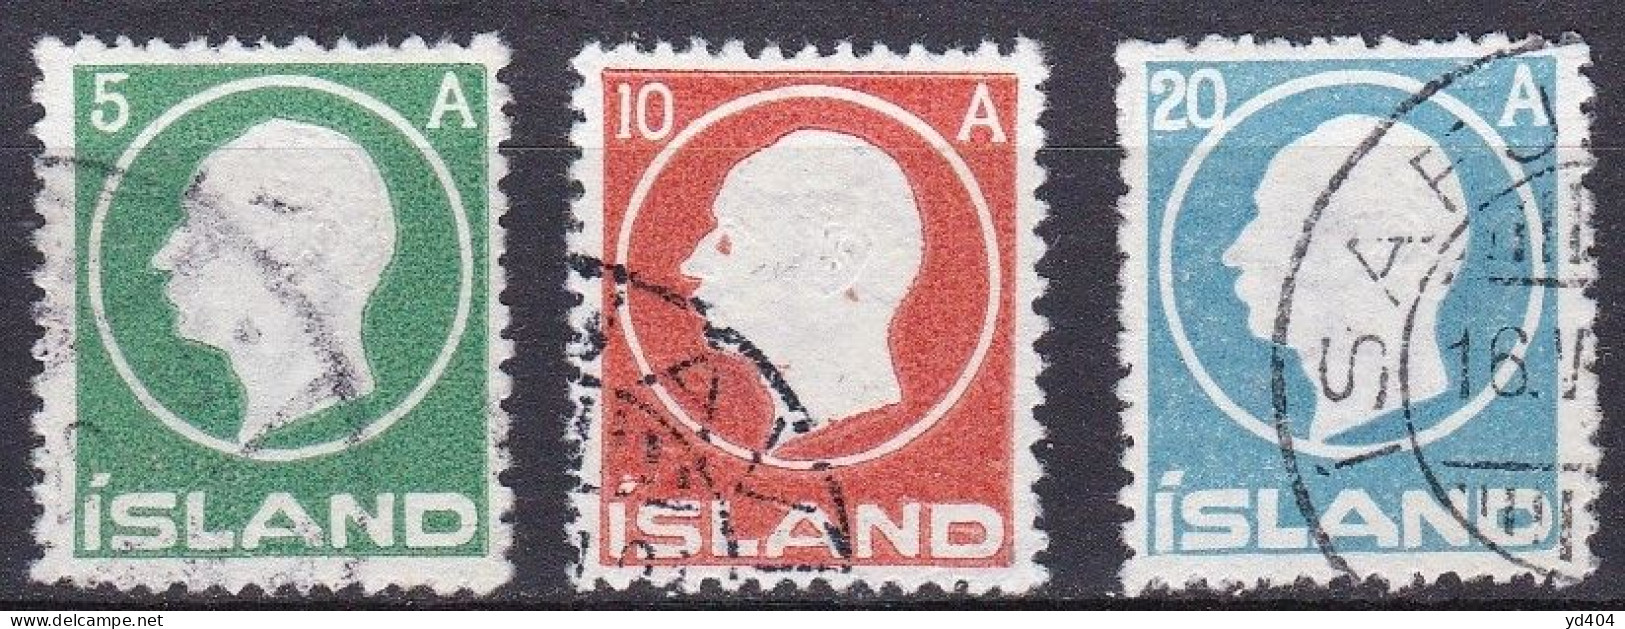 IS012F – ISLANDE – ICELAND – 1912 – KING FRDERIK VIII – SG # 102/4 USED 46 € - Used Stamps